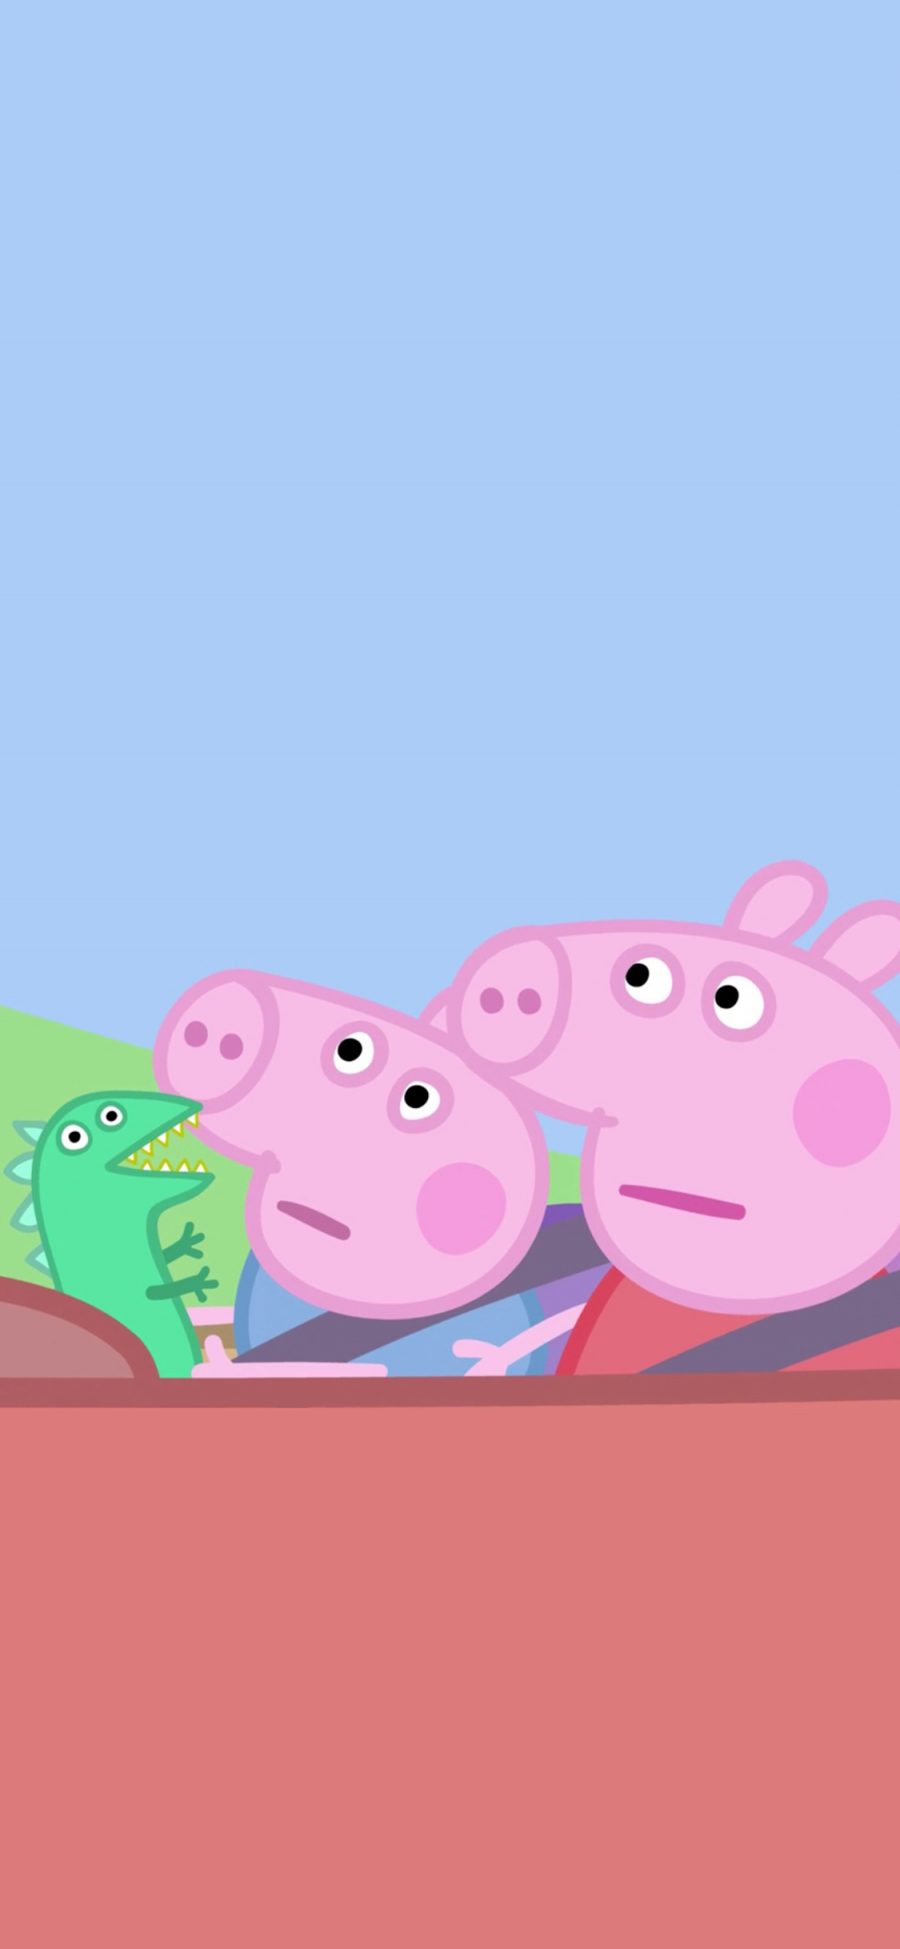 [2436×1125]小猪佩奇 动画 卡通 可爱 苹果手机动漫壁纸图片